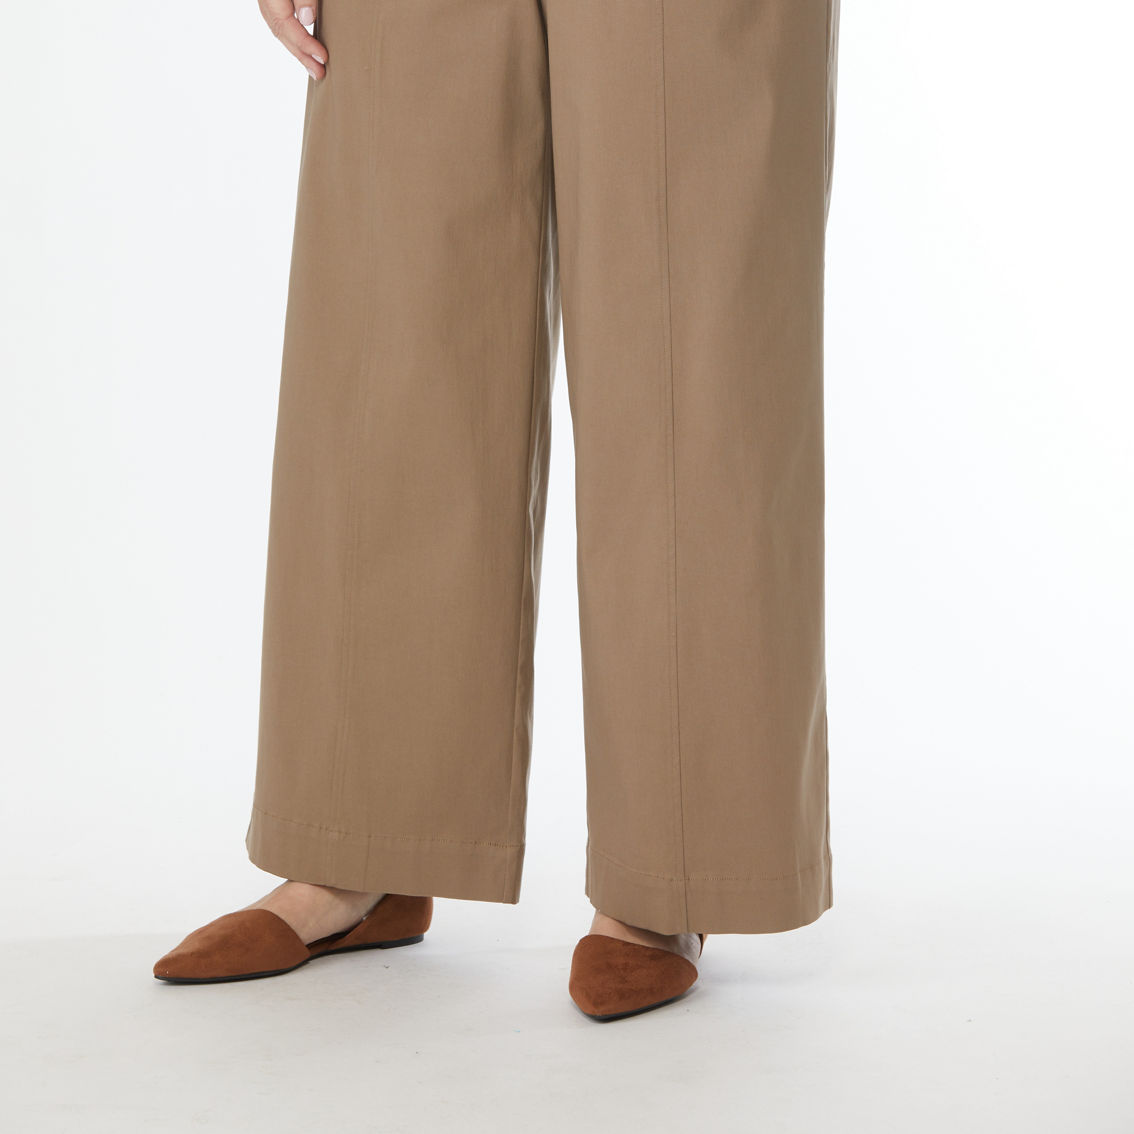 JW Plus Size Millennium Pants - Image 3 of 3